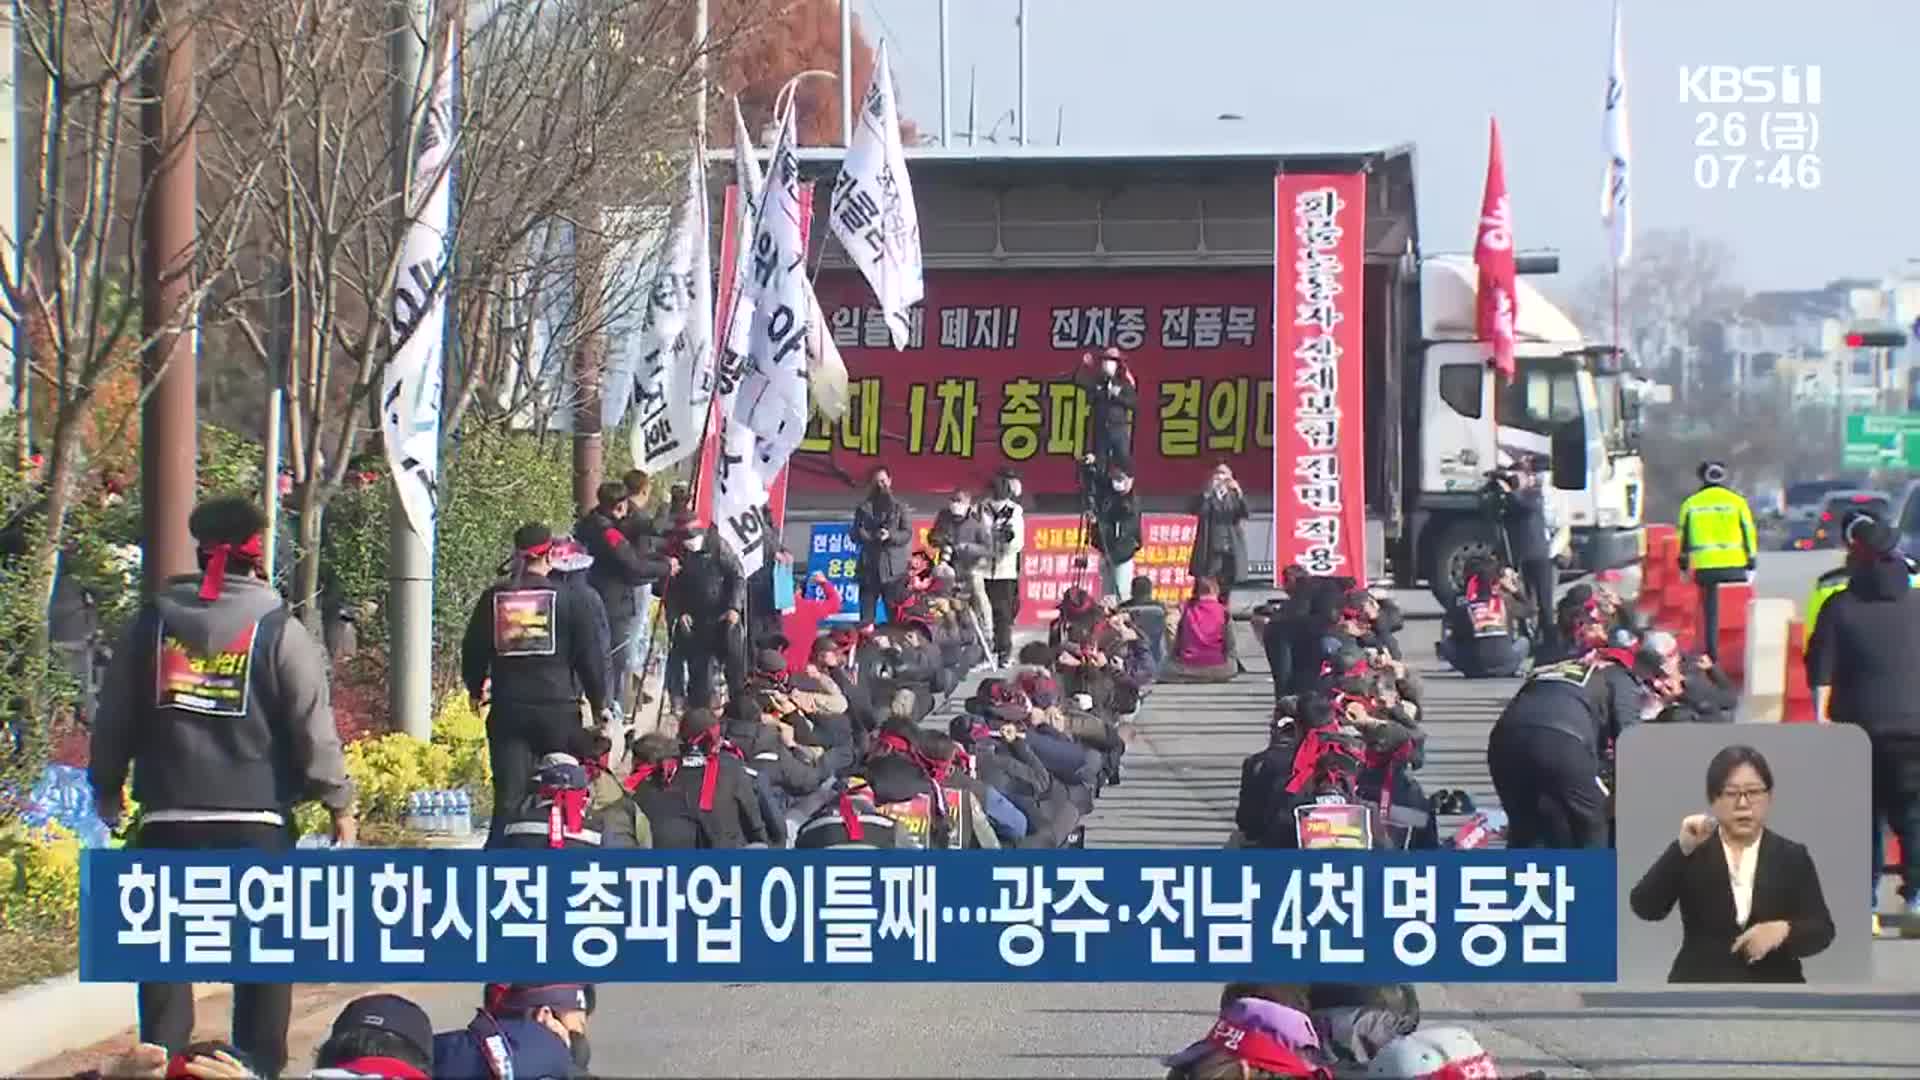 화물연대 한시적 총파업 이틀째…광주·전남 4천 명 동참